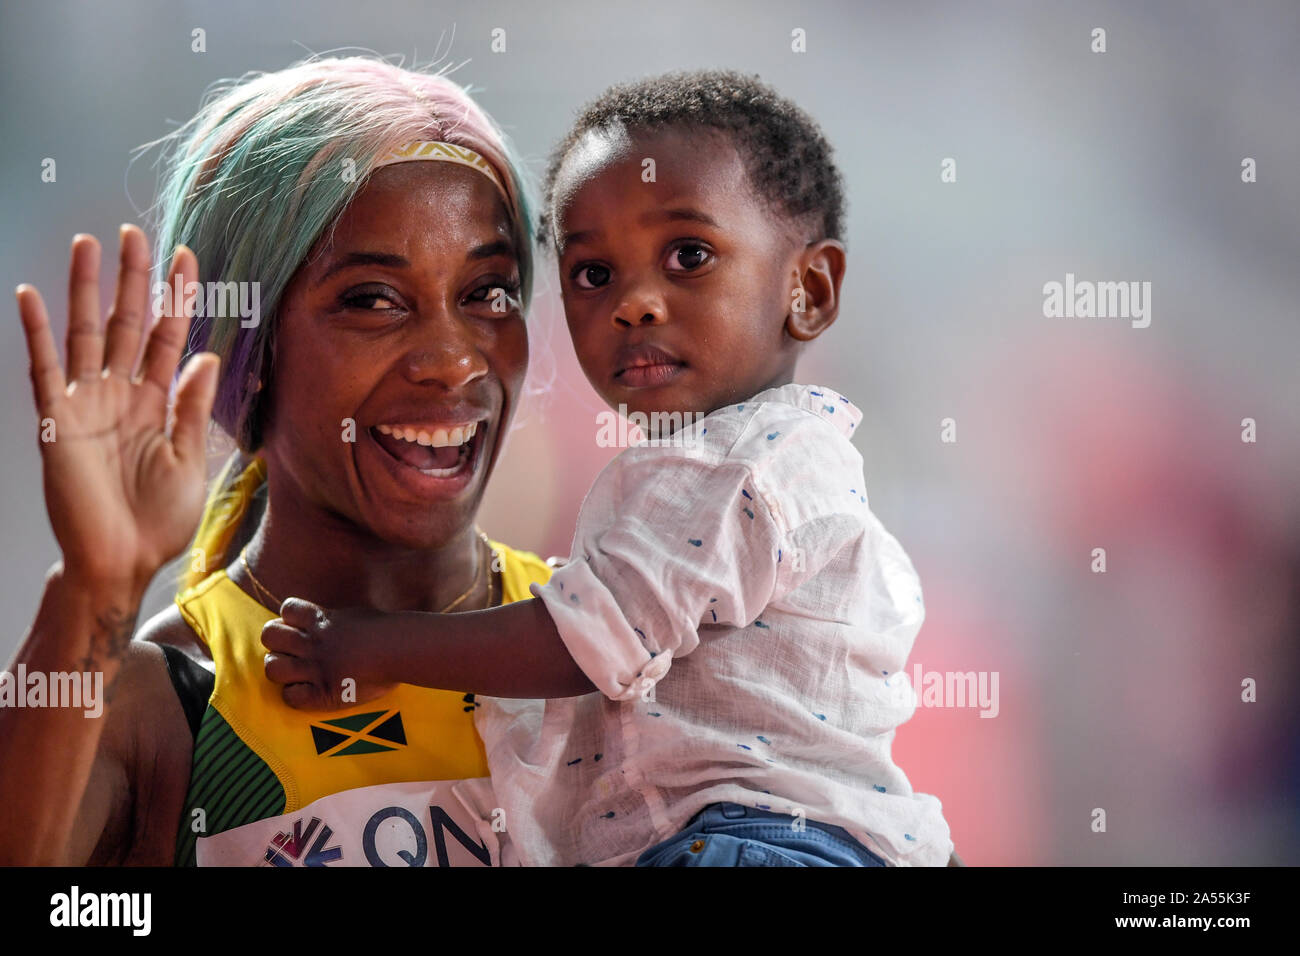 Shelly-Ann Fraser-Pryce (Jamaïque) célèbre sa médaille d'or au 100 mètres avec son bébé. Championnats du monde d'athlétisme de l'IAAF, Doha 2019 Banque D'Images